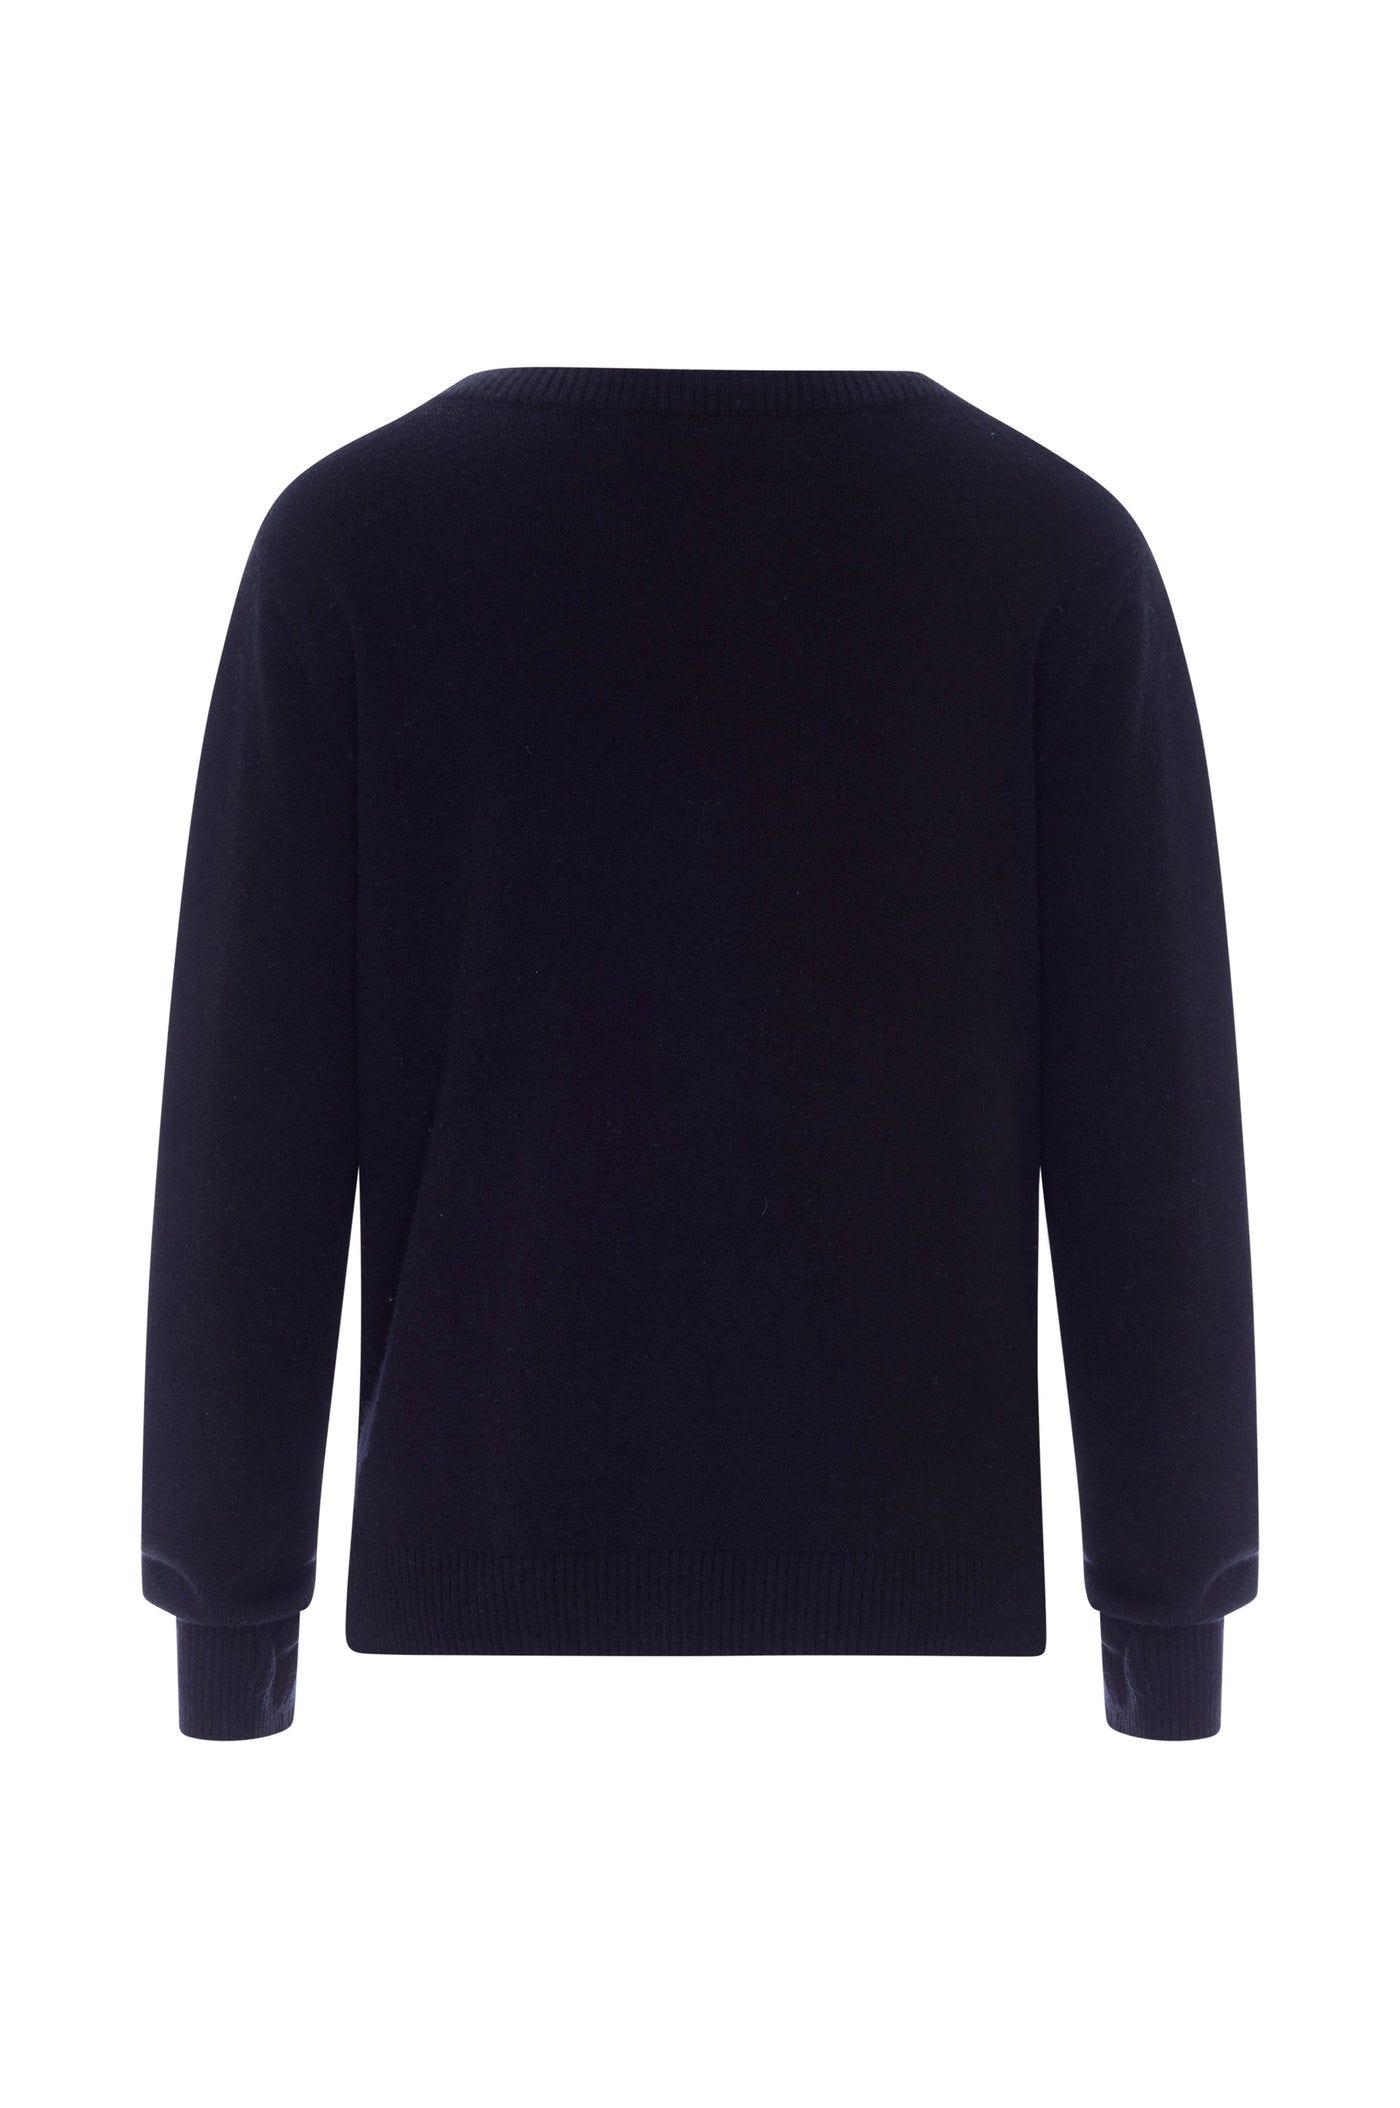 Crown Jewels Sweater - Black